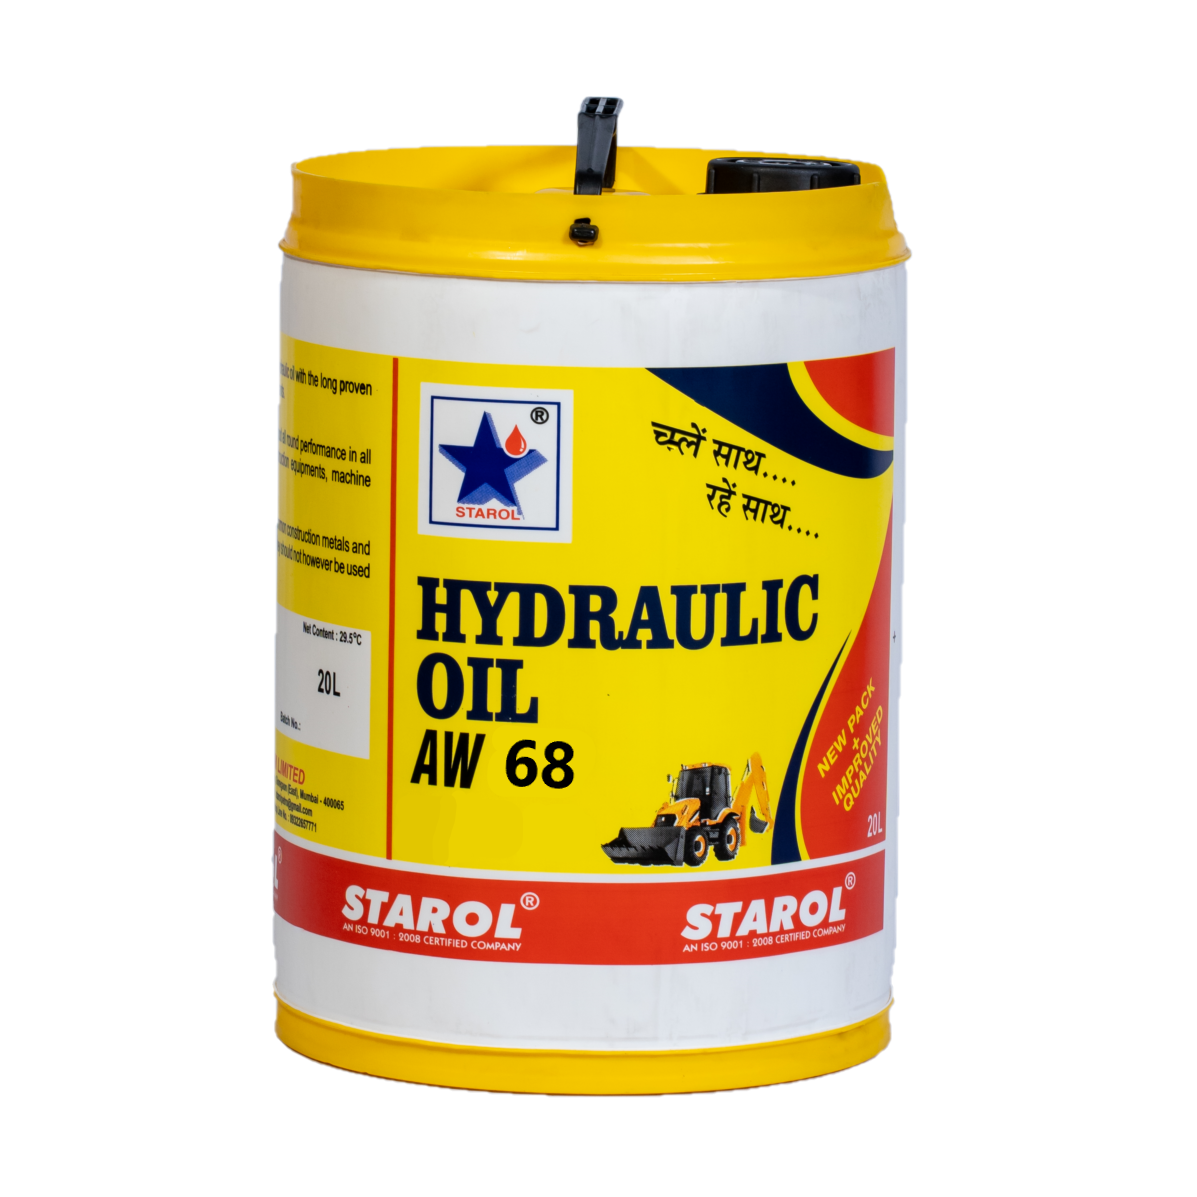 STAROL Hydstar AW 68 (Hydraulic Oil AW 68) – Starol Petroleum